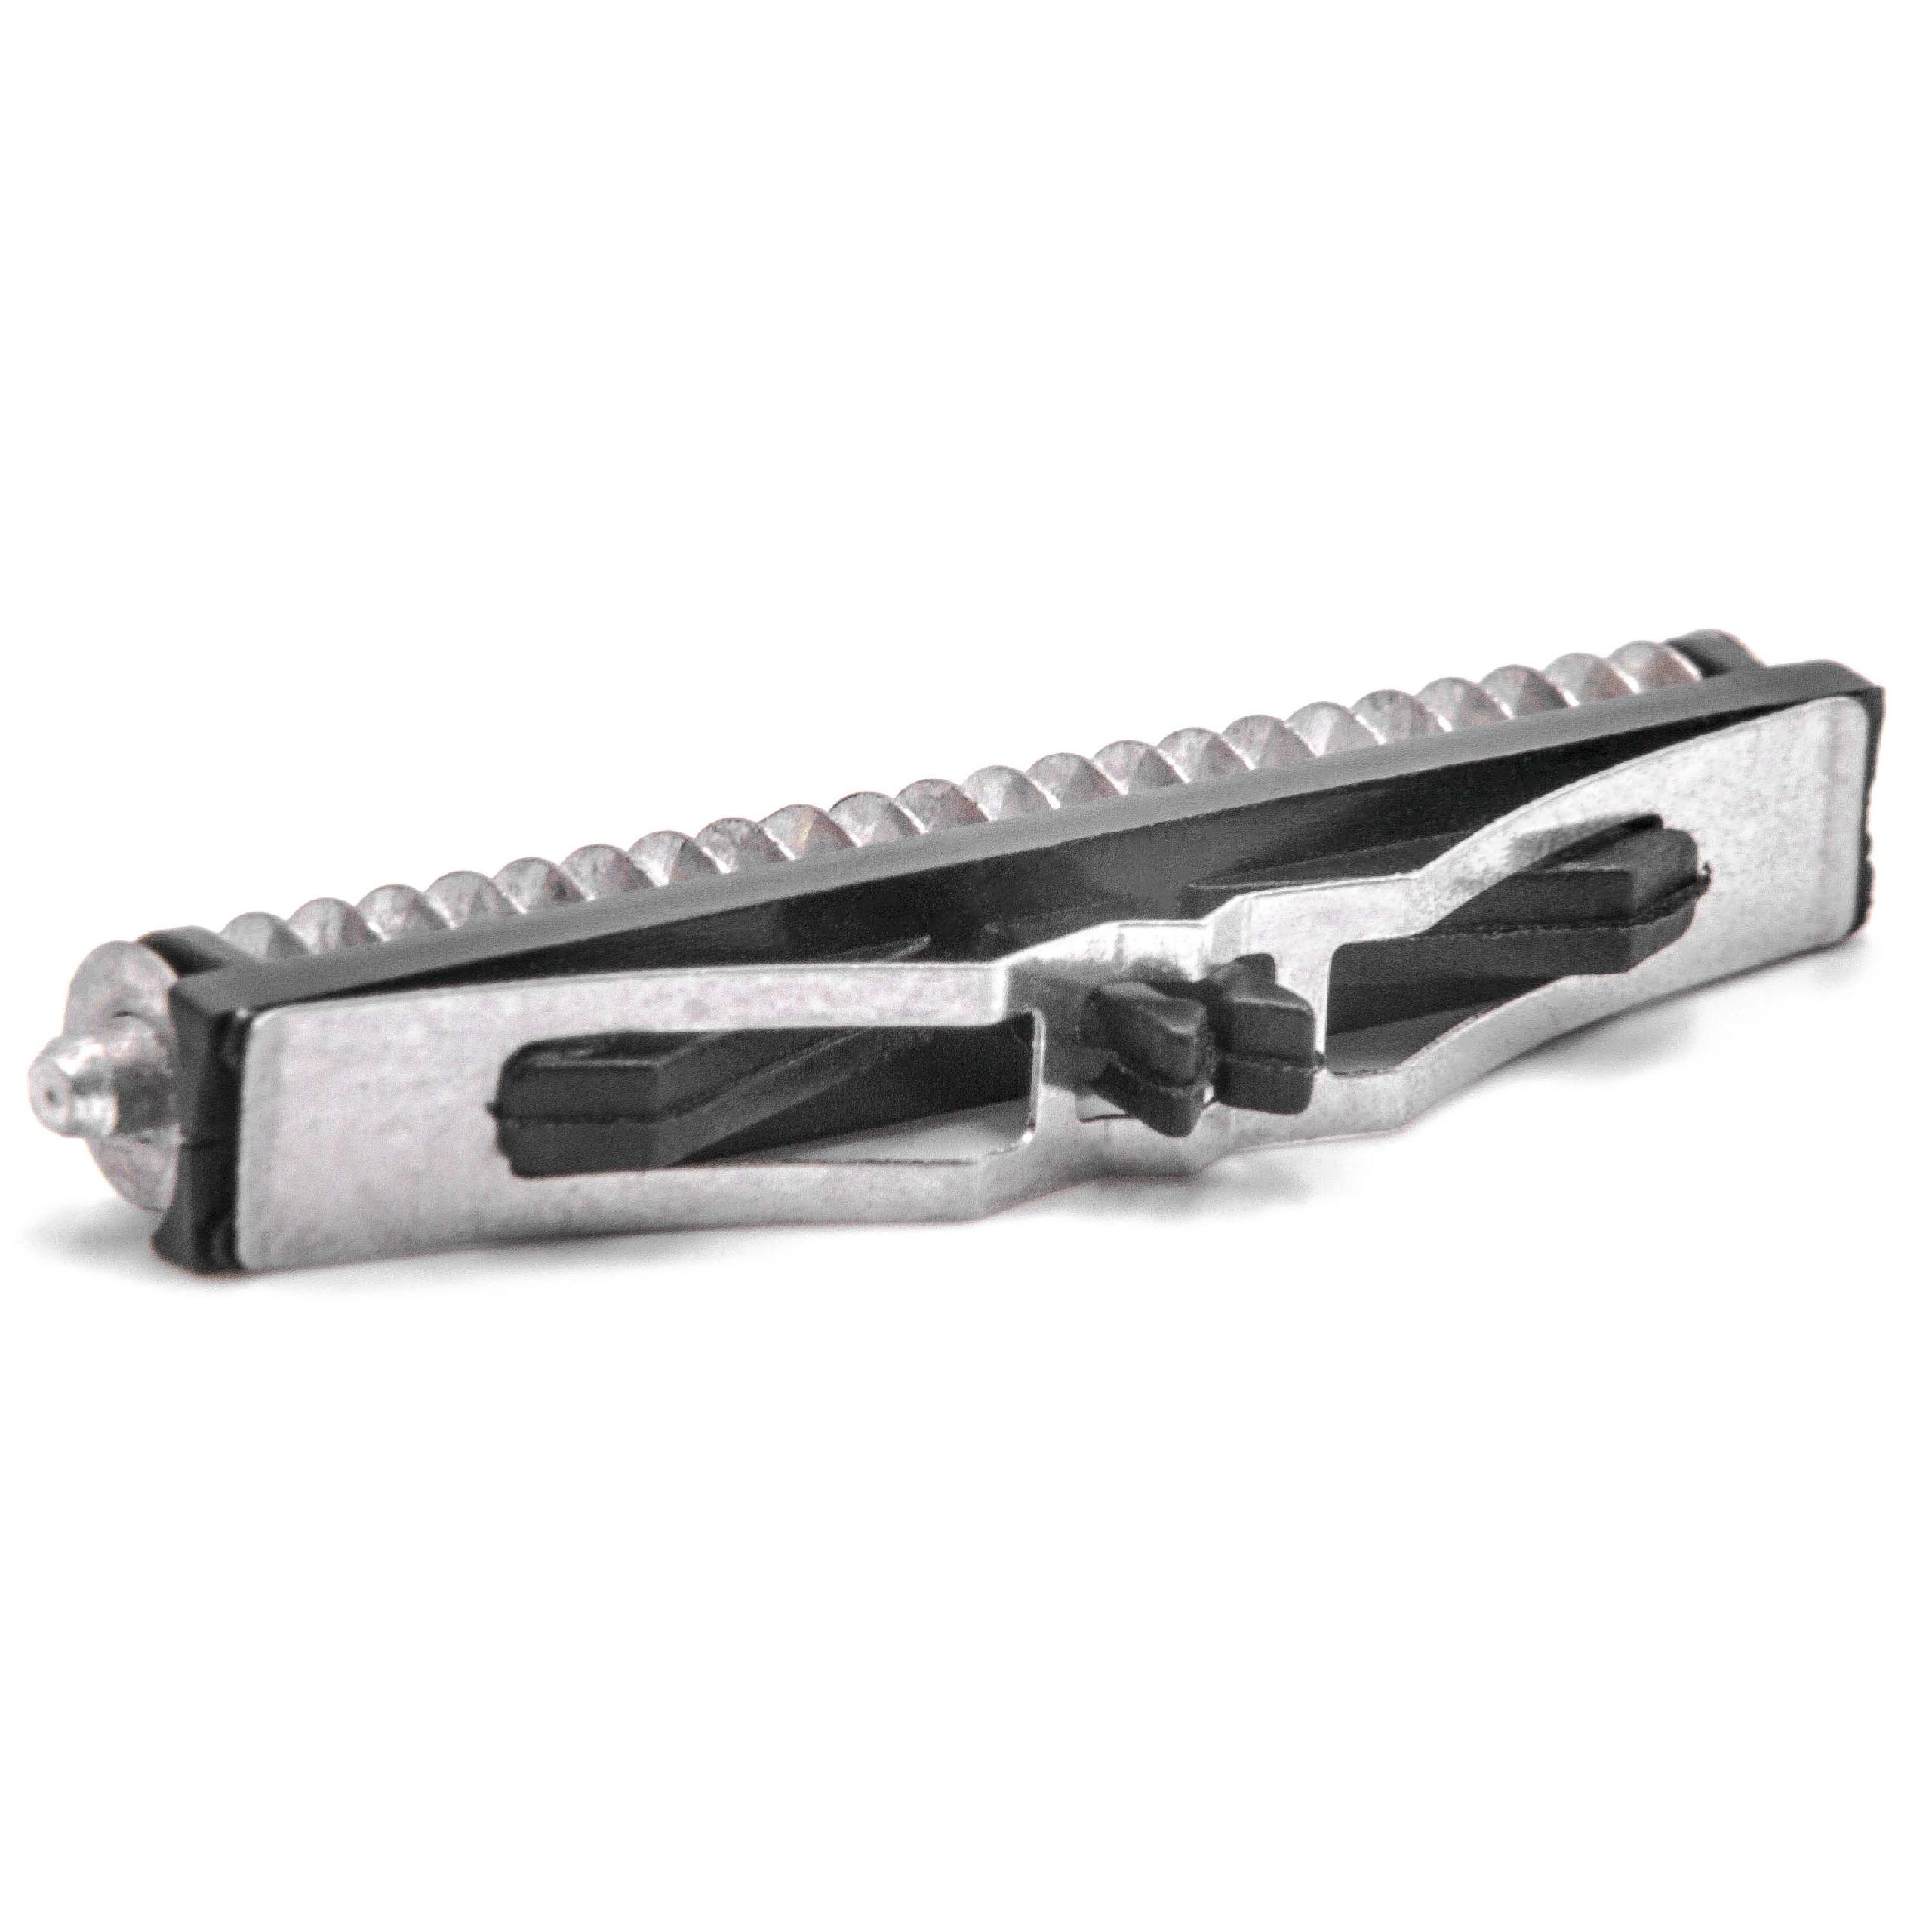 Cutter Block Set as Replacement for Remington SP80 for Remington Razors - Shaving Parts Set